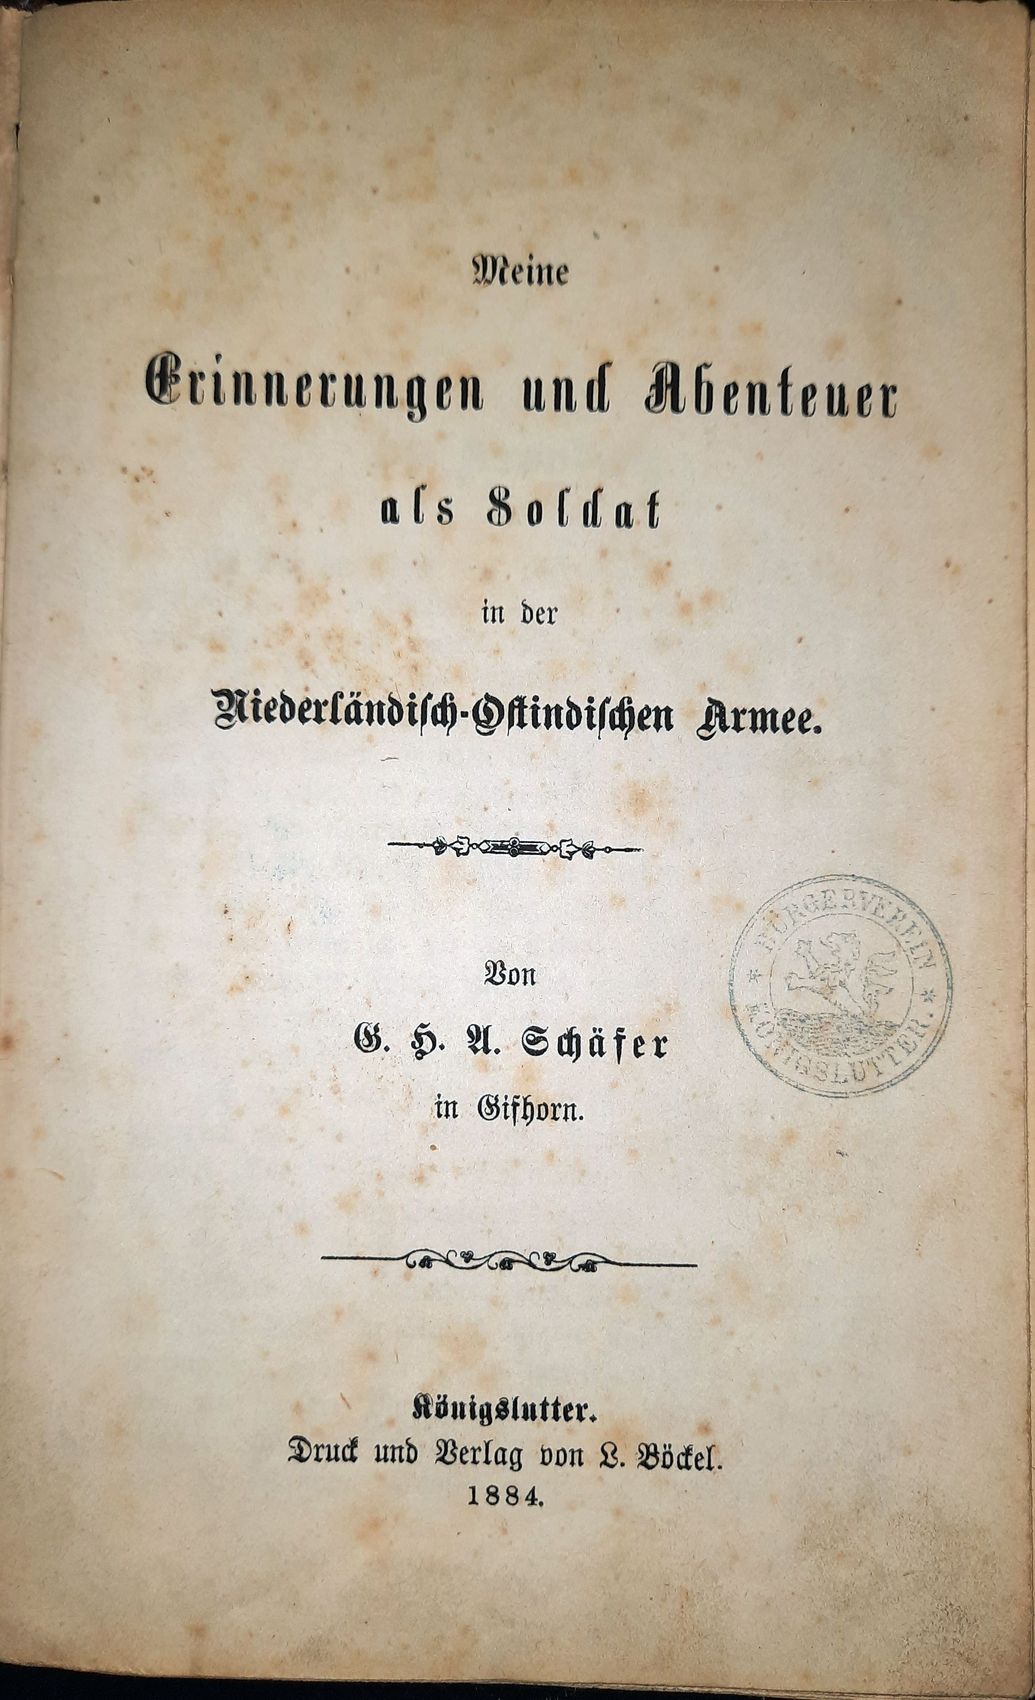 SCHFER, G. H. A.: - Erinnerungen und Abenteuer als Soldat in der Niederlndisch-Ostindischen Armee..